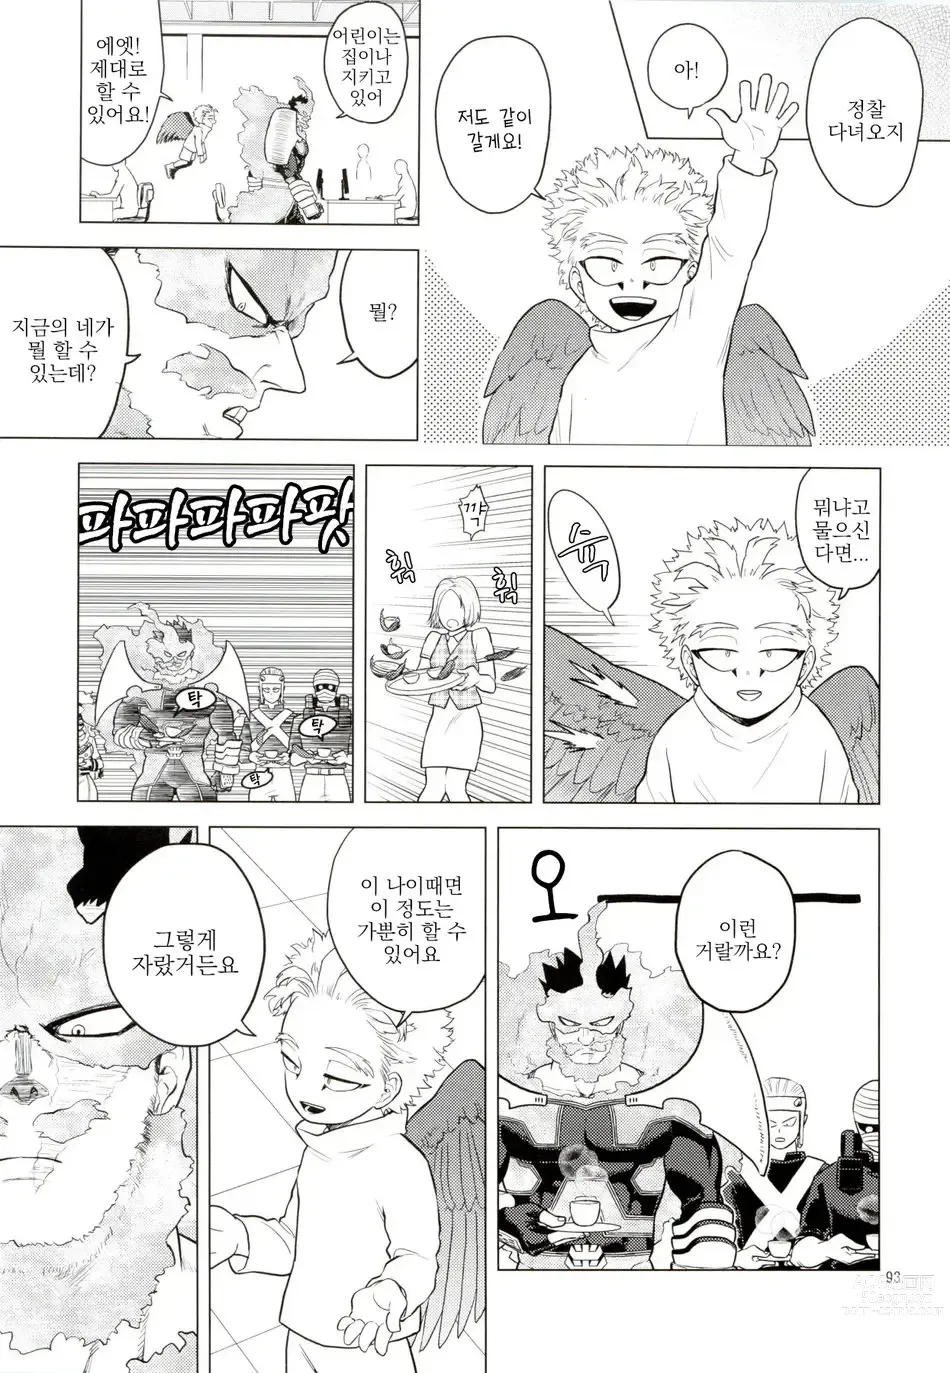 Page 92 of doujinshi Enholog #01